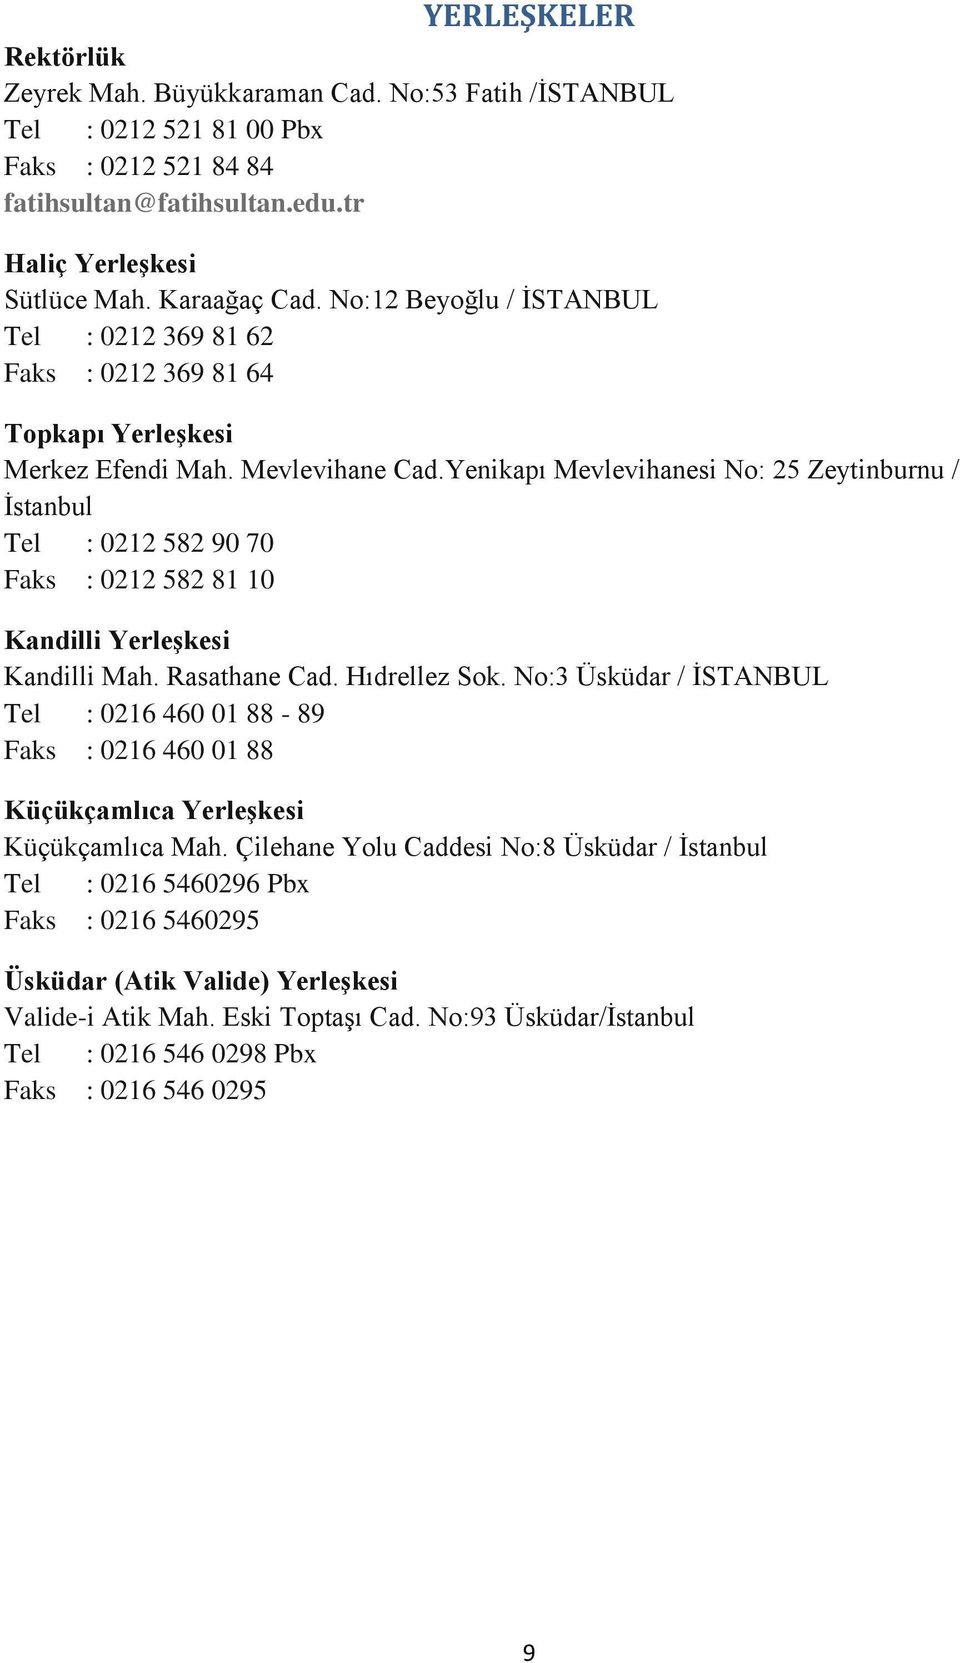 Yenikapı Mevlevihanesi No: 25 Zeytinburnu / İstanbul Tel : 0212 582 90 70 Faks : 0212 582 81 10 Kandilli Yerleşkesi Kandilli Mah. Rasathane Cad. Hıdrellez Sok.